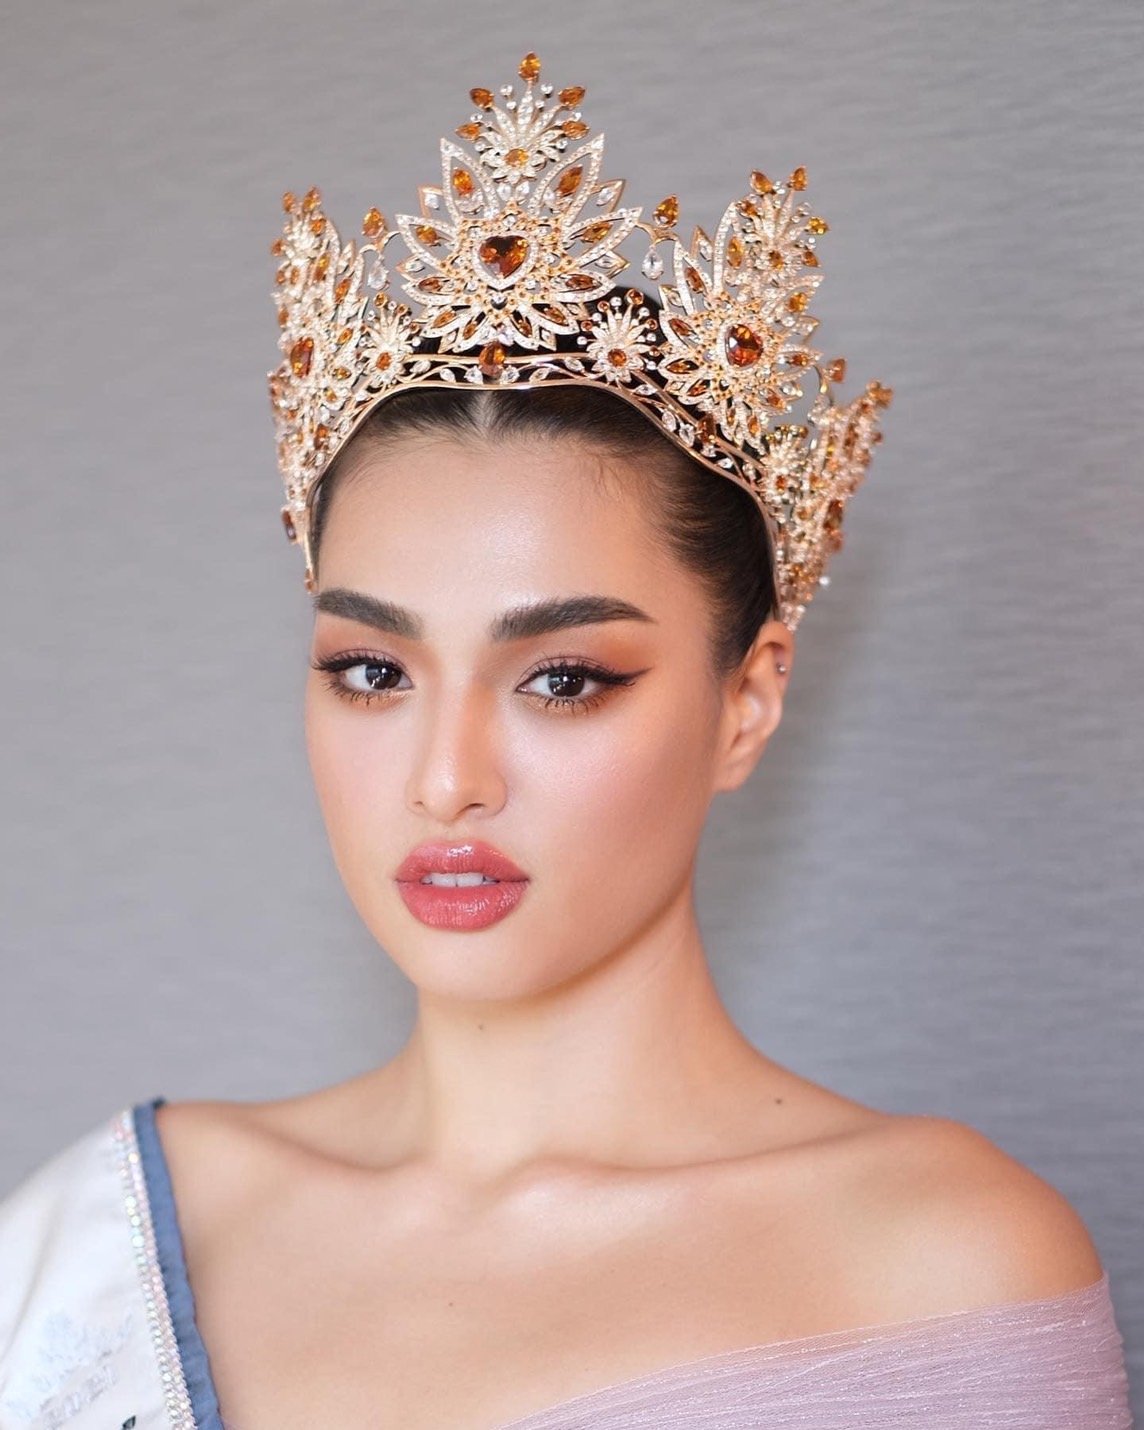 เปิดประวัติ แอนชิลี สก๊อต เคมมิส เจ้าของตำแหน่ง Miss Universe Thailand 2021